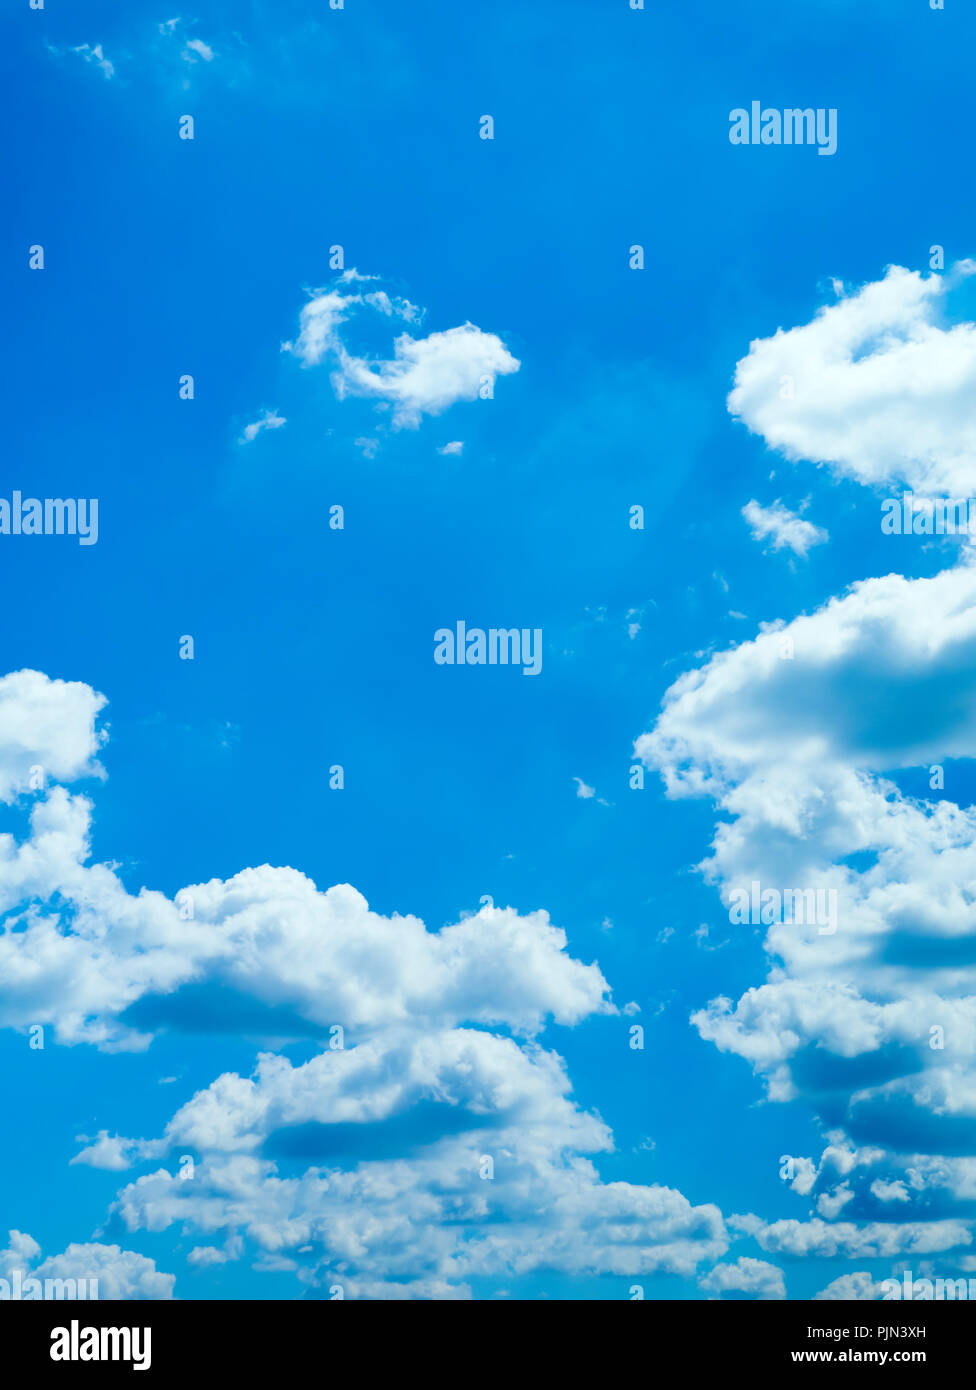 A nice blue sky with white clouds, Ein schöner blauer Himmel mit weissen Wolken Stock Photo